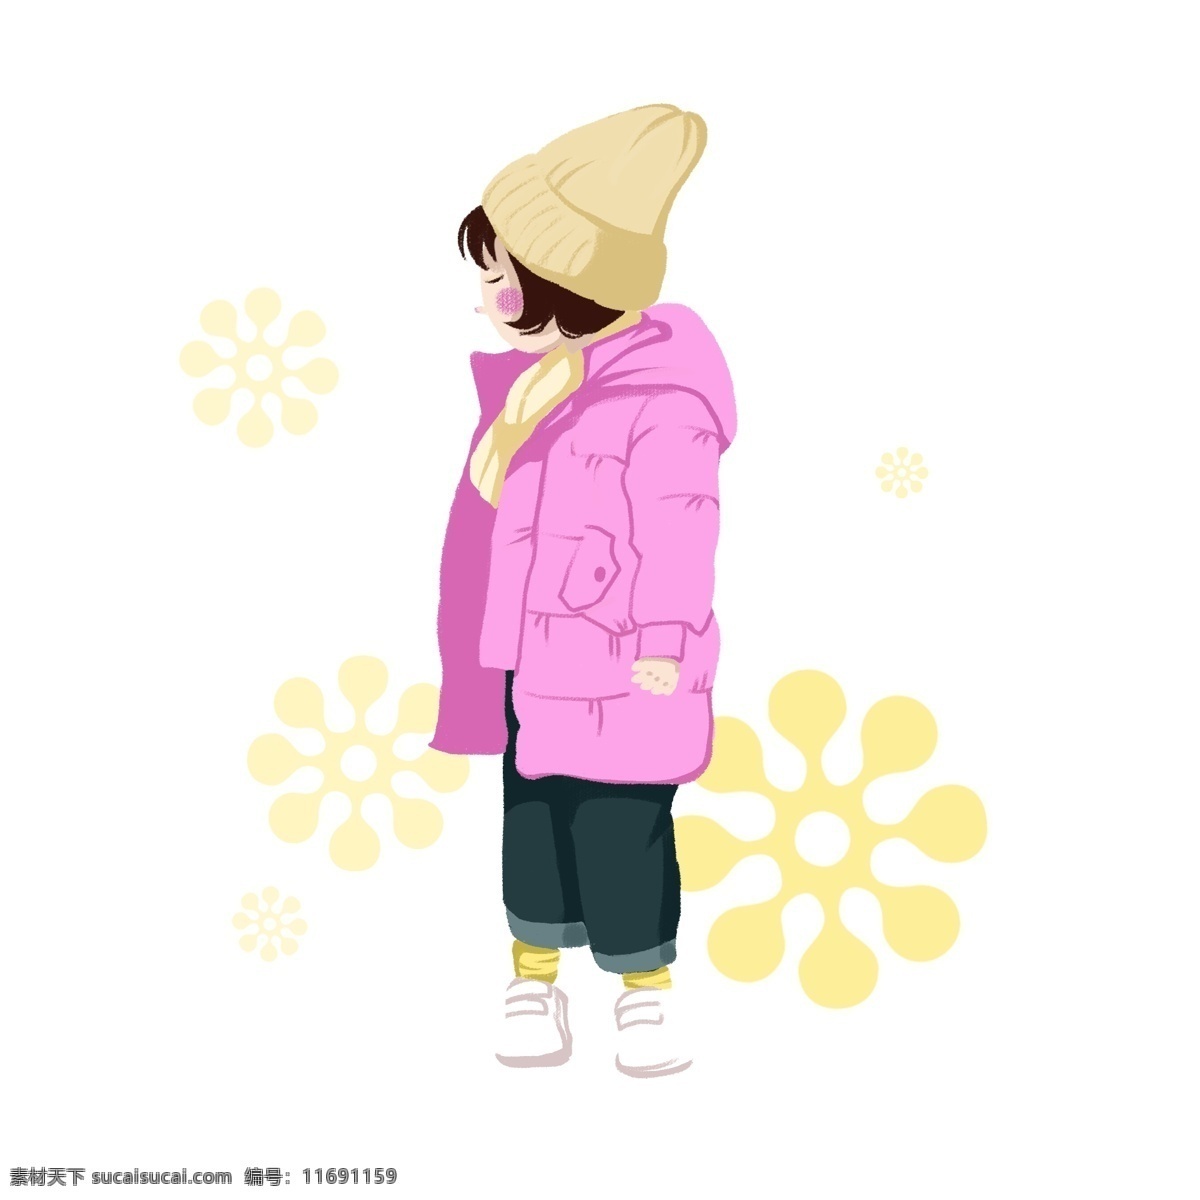 卡通 手绘 秋冬 季节 小女孩 插画 穿着 保暖 女孩 戴帽子 人物 可爱 冬季 冬季人物